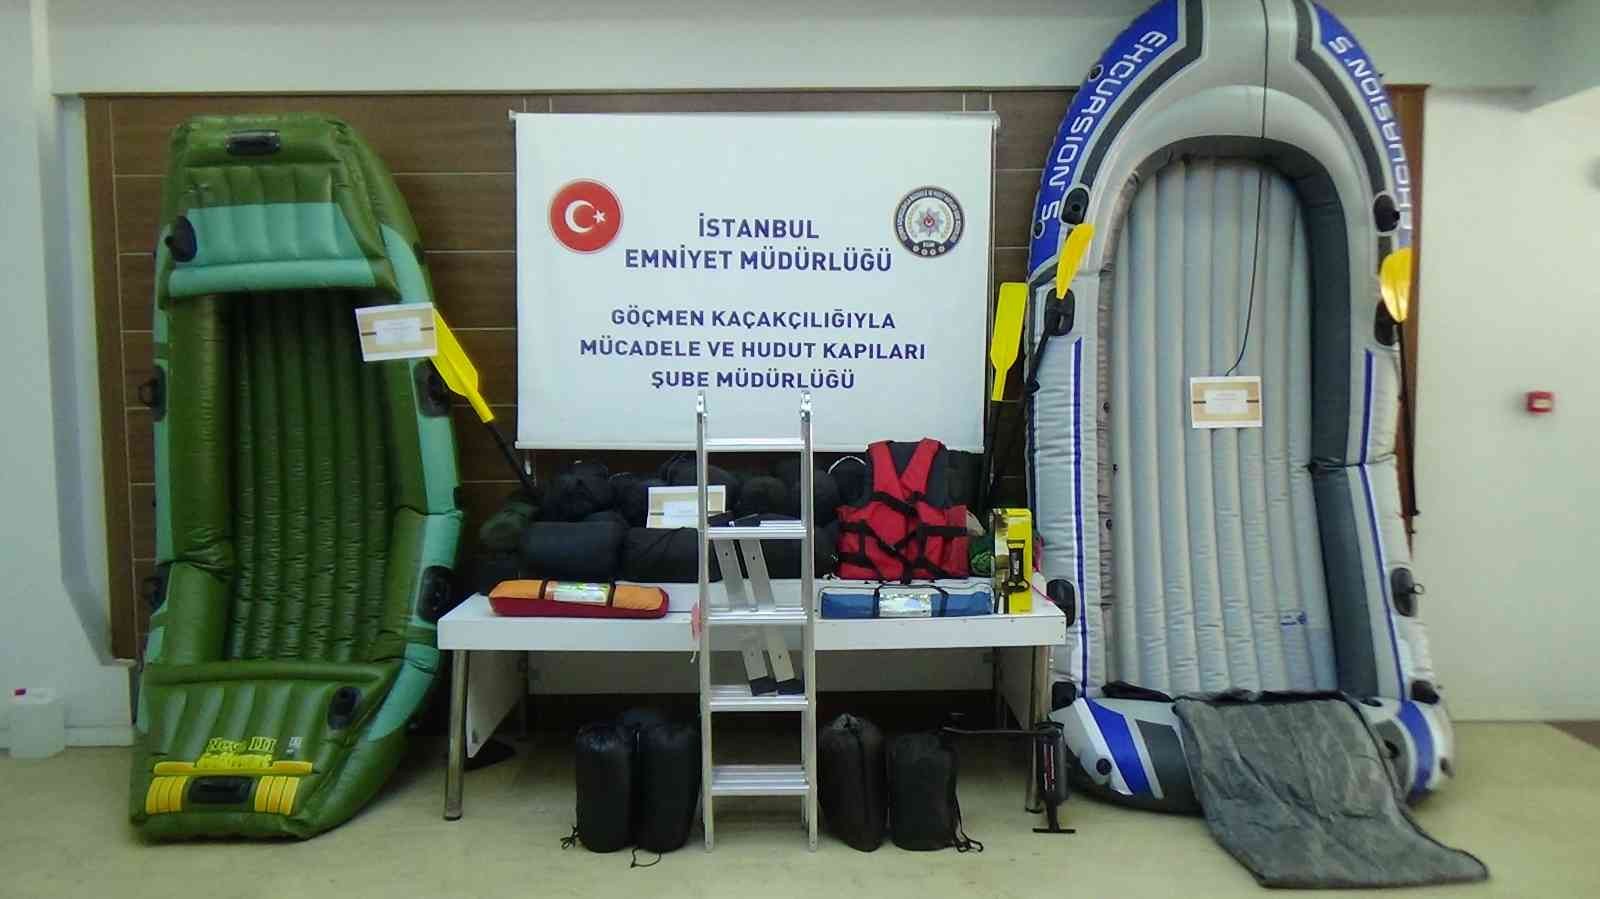 İstanbul polisi son on günde Fatih, Zeytinburnu, Esenler ve Silivri ilçelerinde göçmen kaçakçılığında yönelik 5 farklı operasyon düzenlendi ...